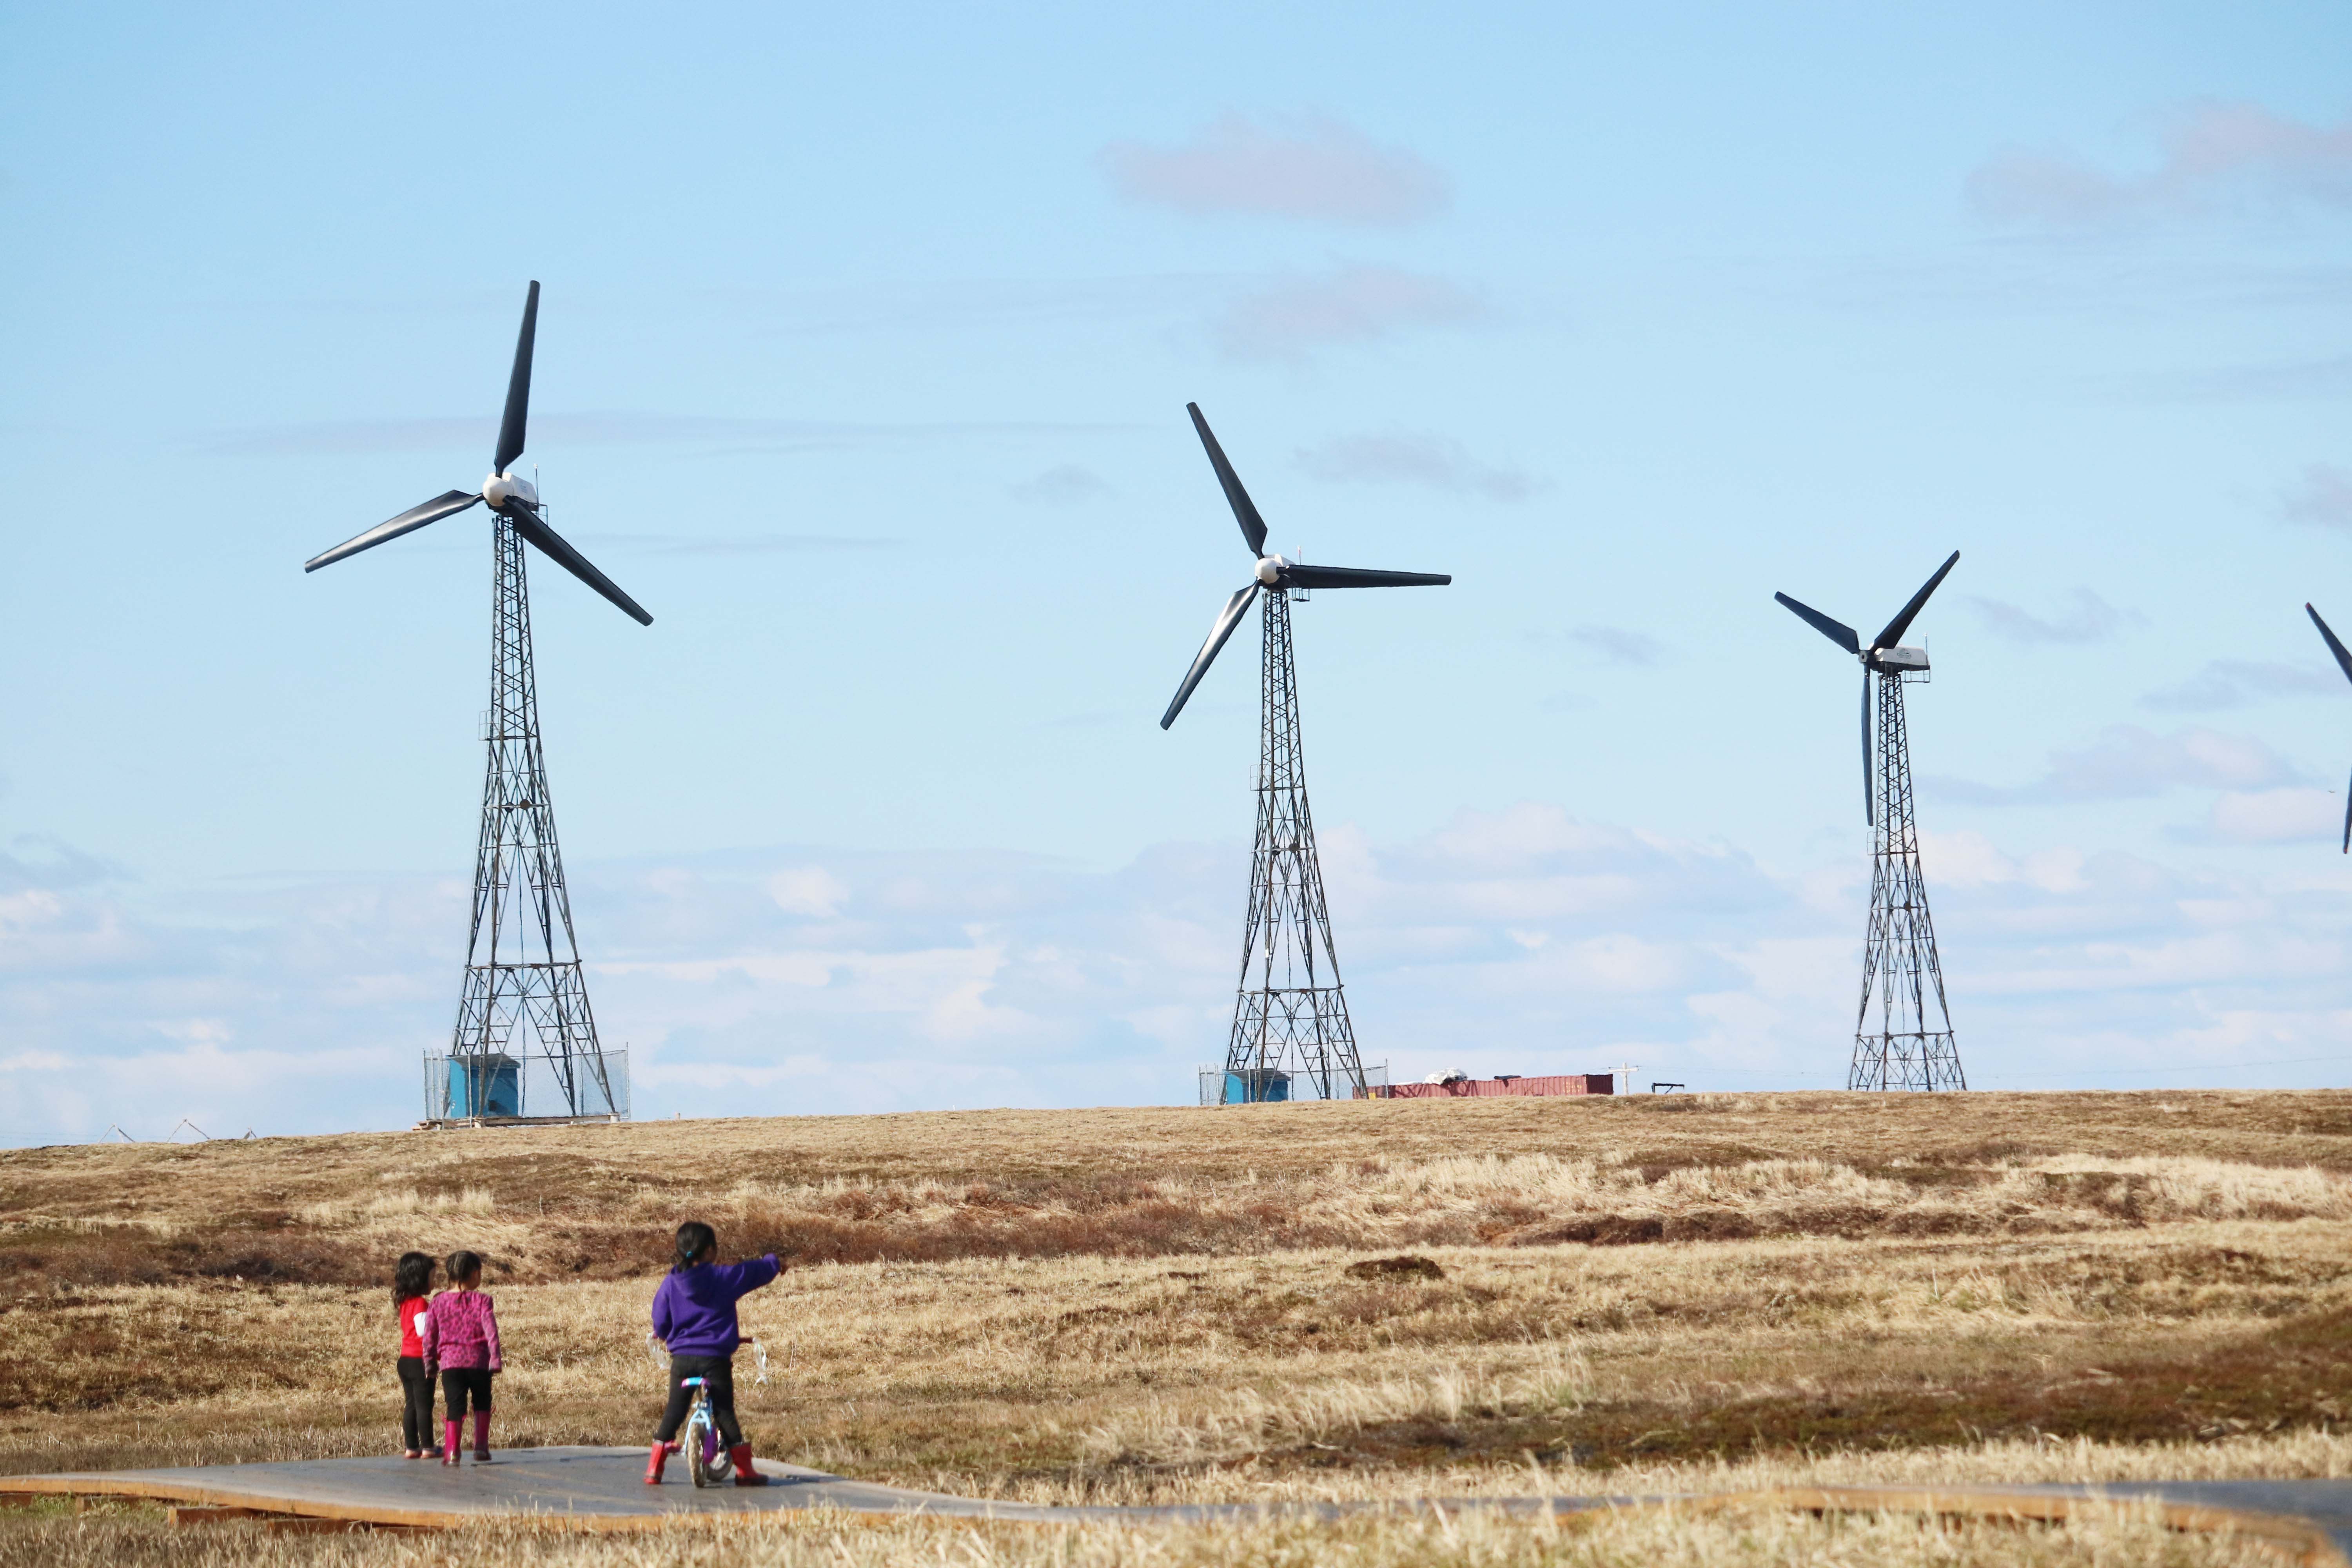 Children point to a wind farm